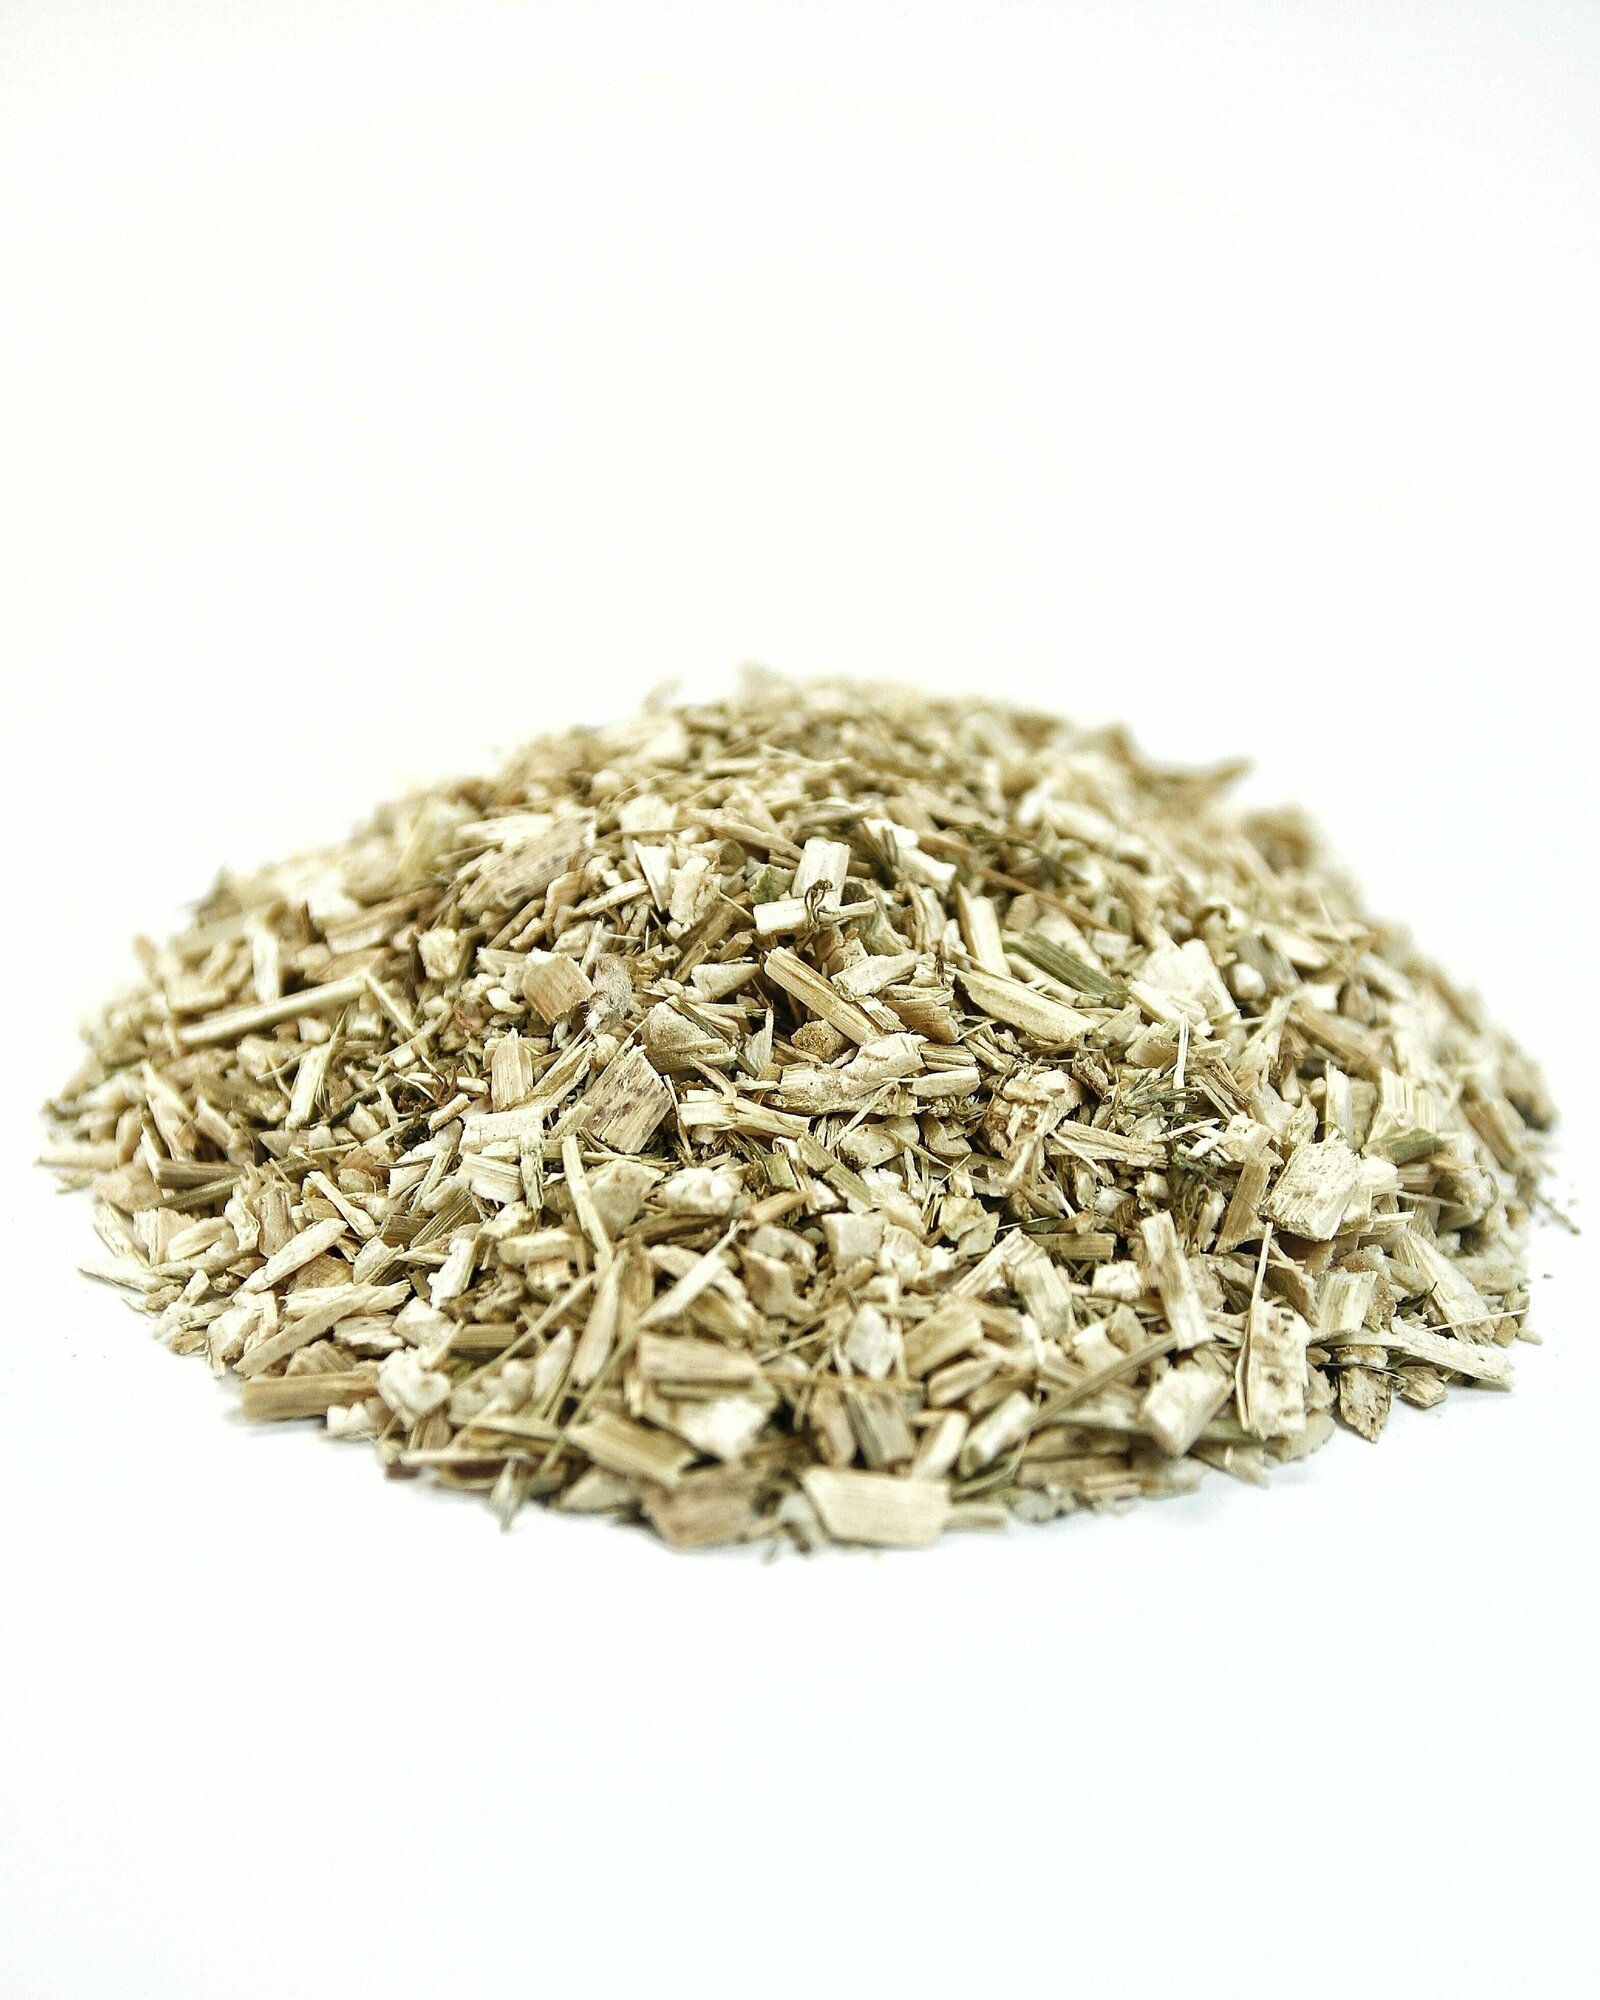 Болиголов крапчатый 50 гр - трава сушеная, травяной чай, фиточай, фитосбор (Болиголов пятнистый, Омег)